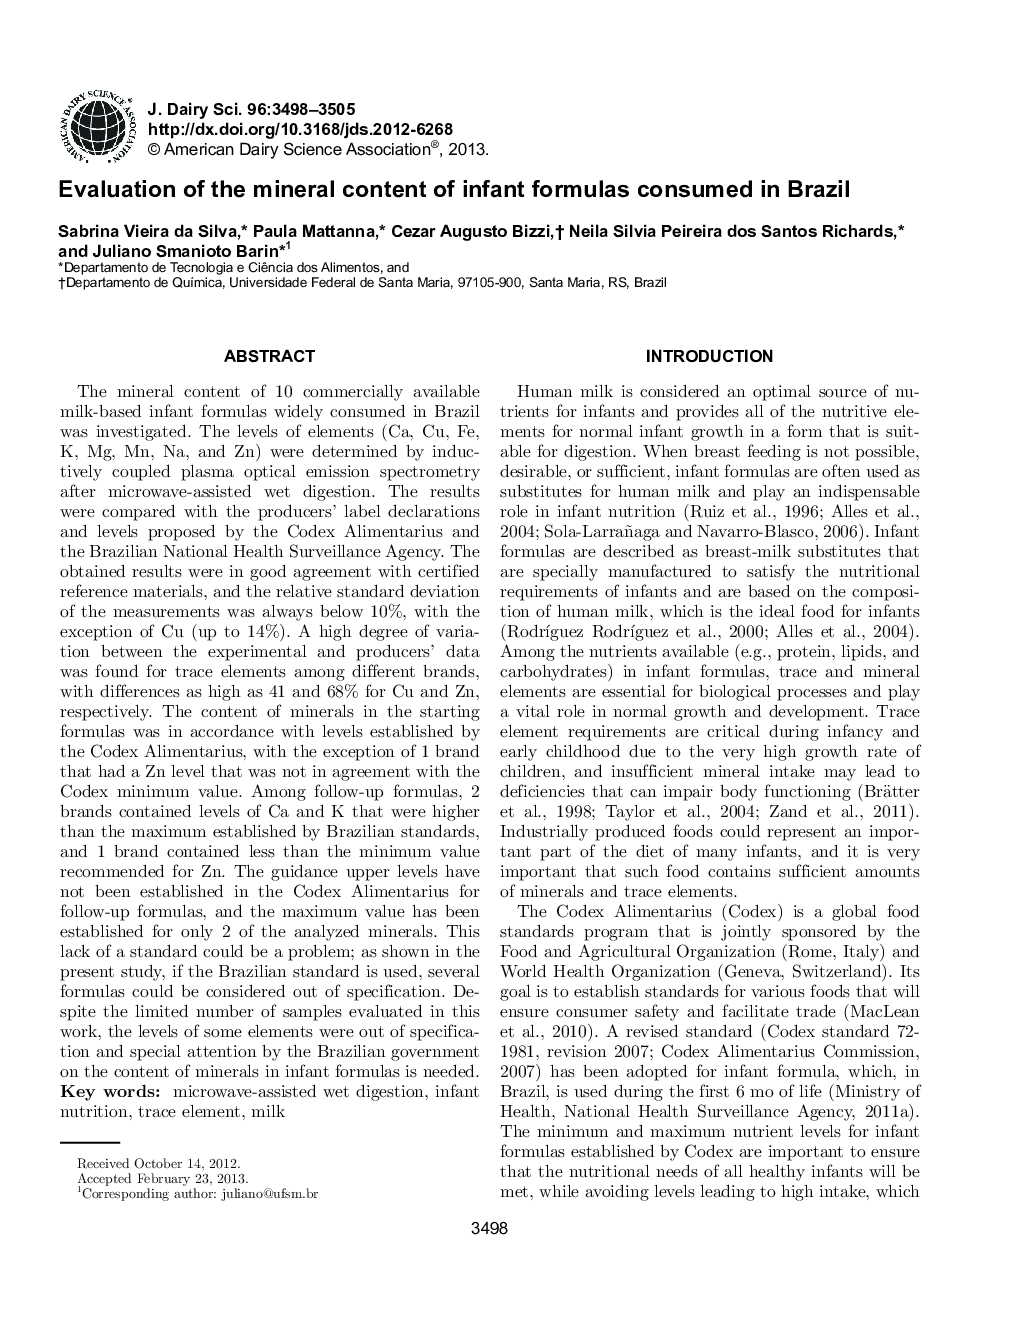 ارزیابی محتوای مواد معدنی موجود در فرمولهای نوزاد در برزیل 